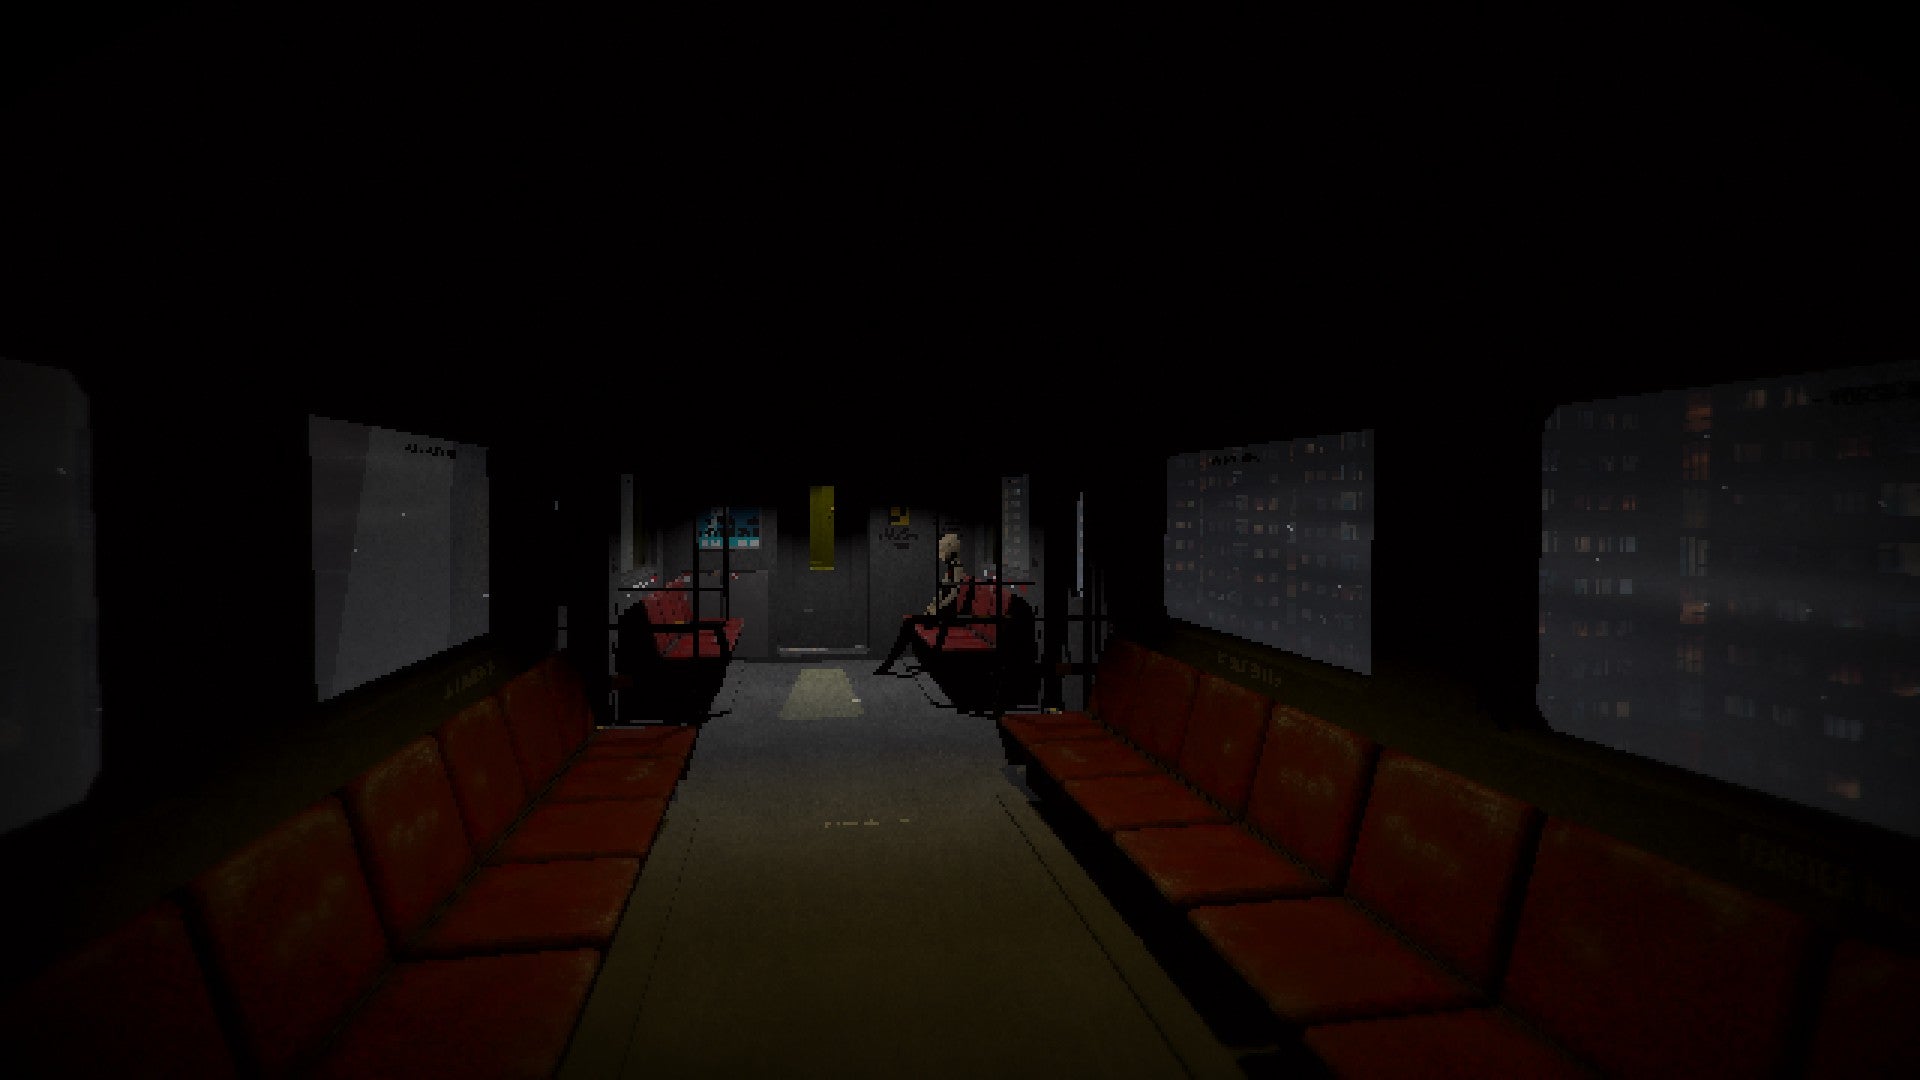 Signalis review - een zeer donkere, futuristische treinwagon met vervaagde rode stoelen en een personage dat alleen aan het eind zat, wolkenkrabbers buiten.